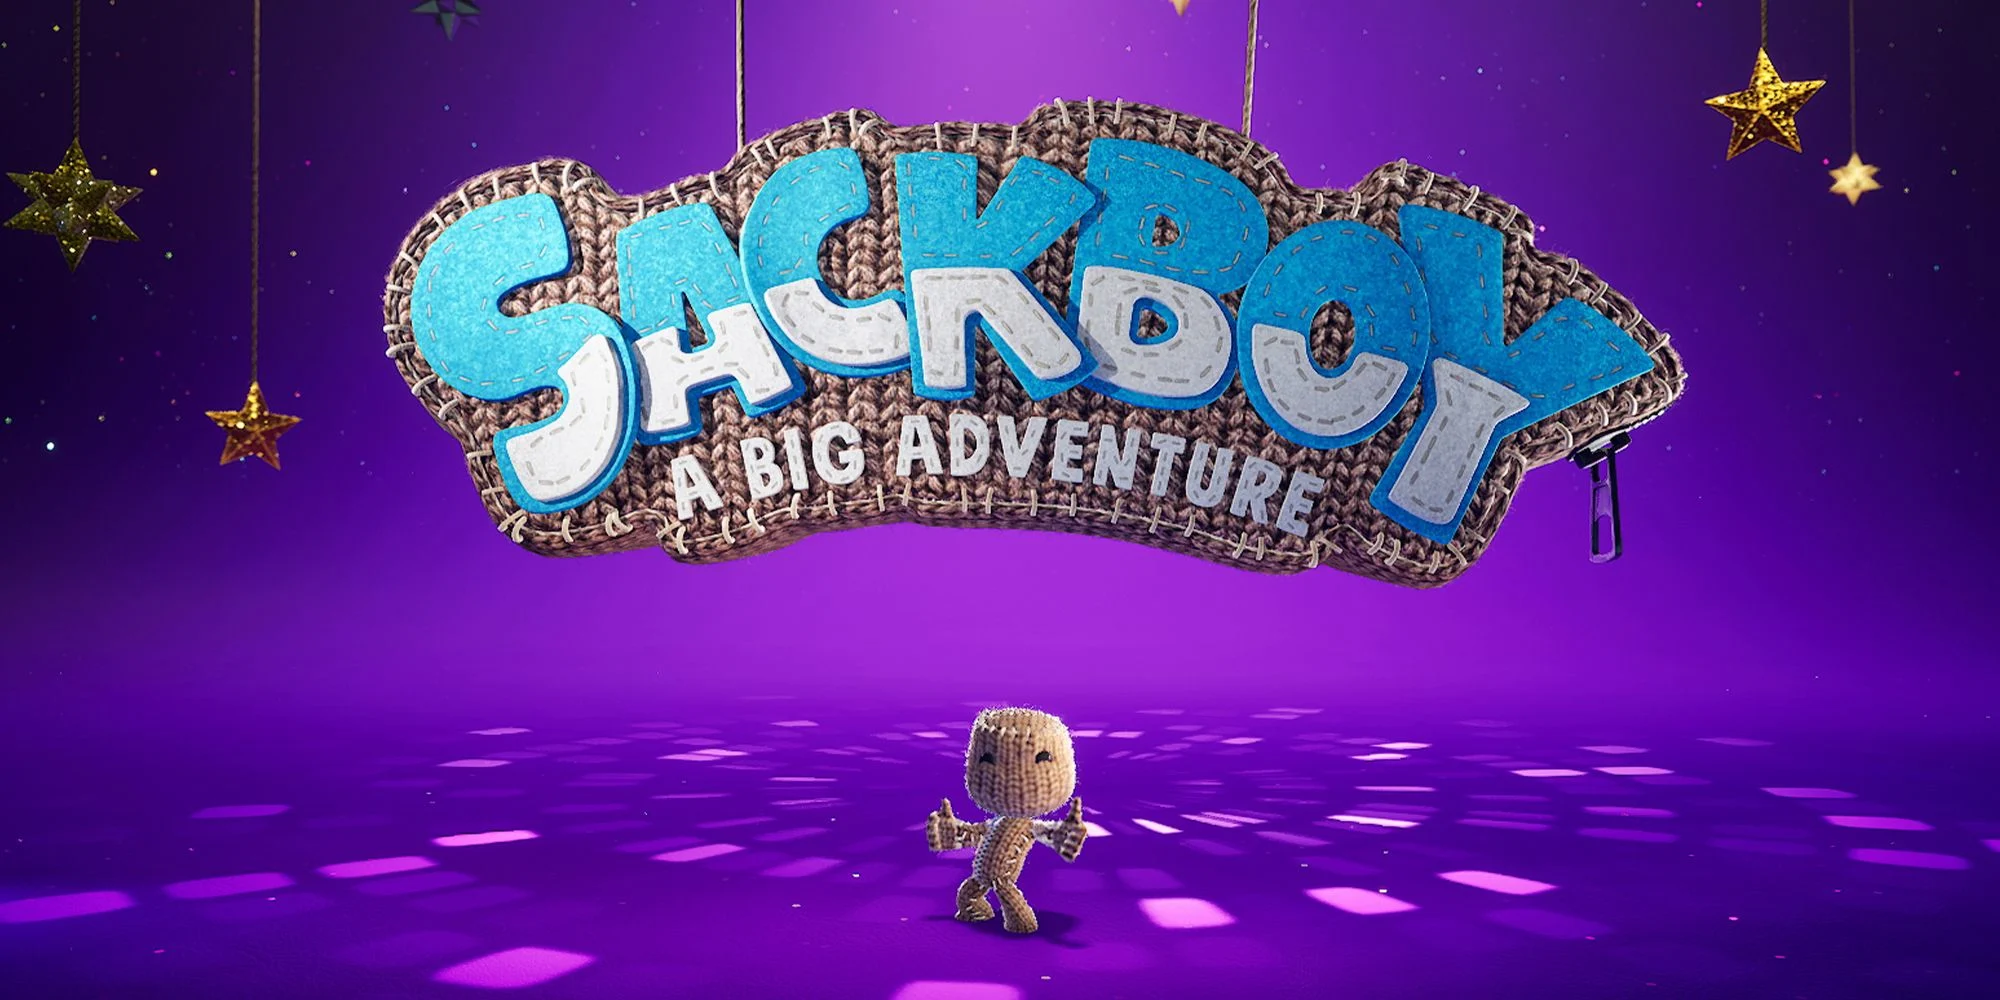 Sackboy: A Big Adventure ya está disponible para PlayStation 4 y PlayStation 5.